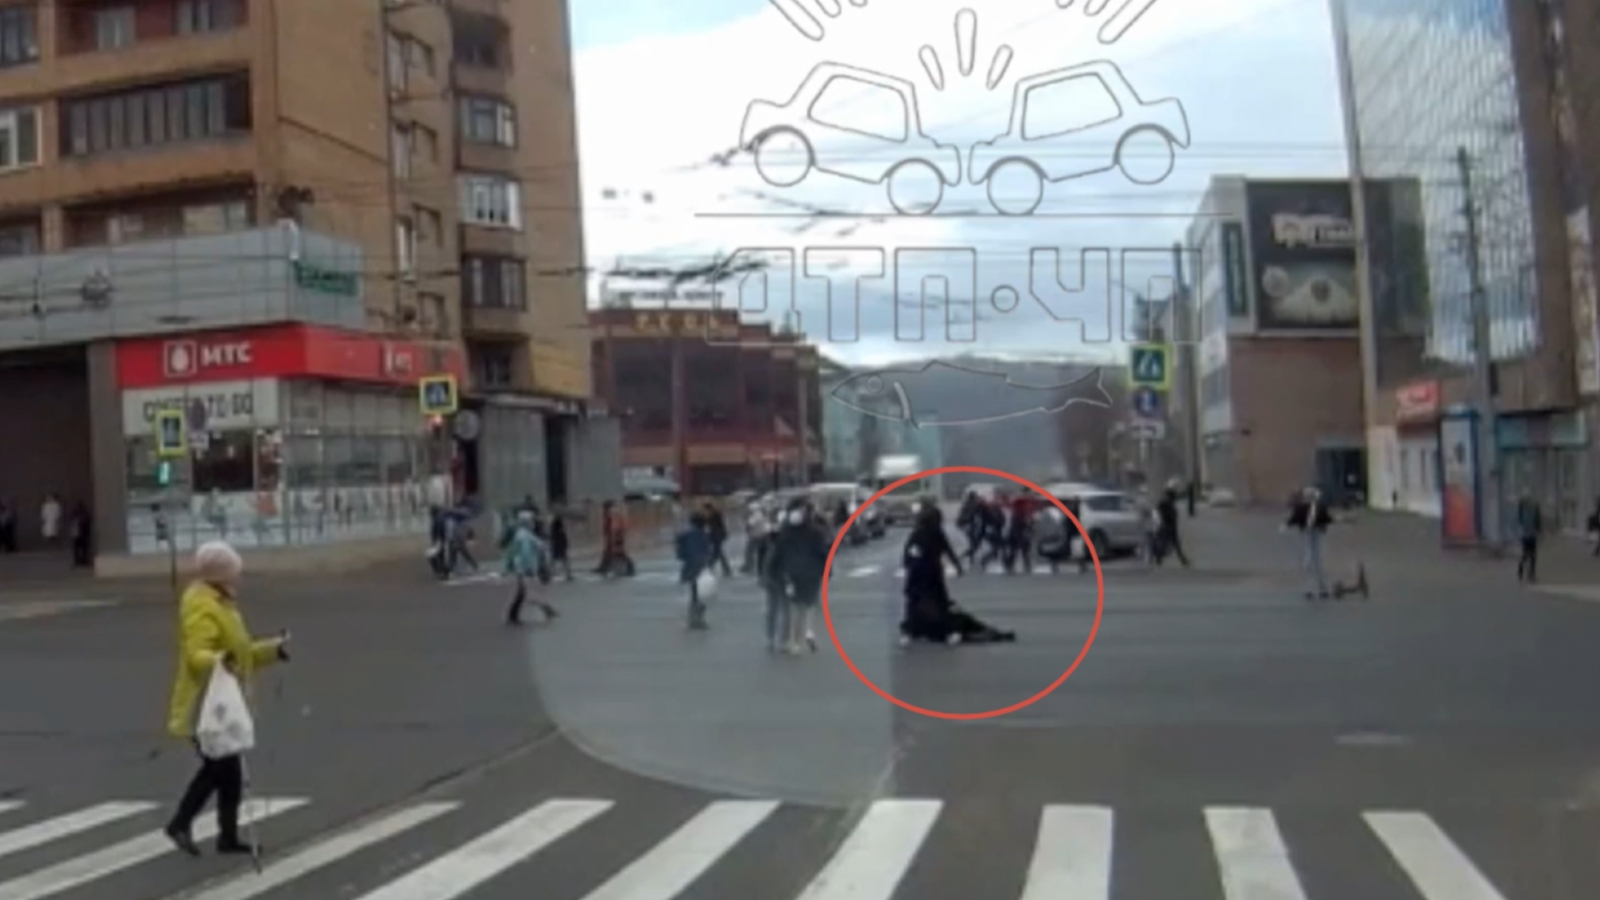 Девушка на самокате сбила пожилого человека в центре Мурманска [видео]